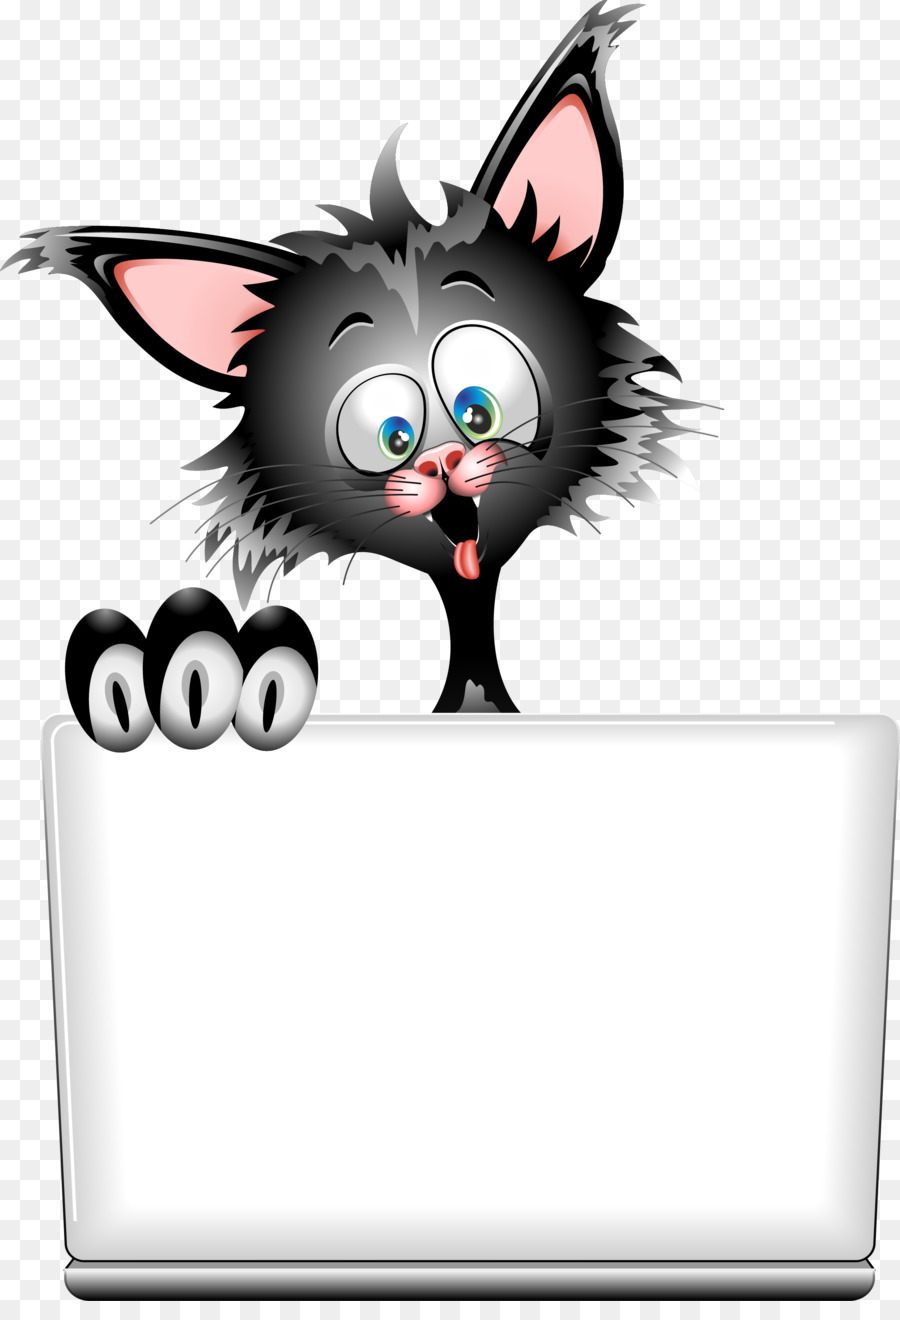 Çizim Karikatür telifsiz Portre kedi küçük resim şeffaf PNG görüntüsü